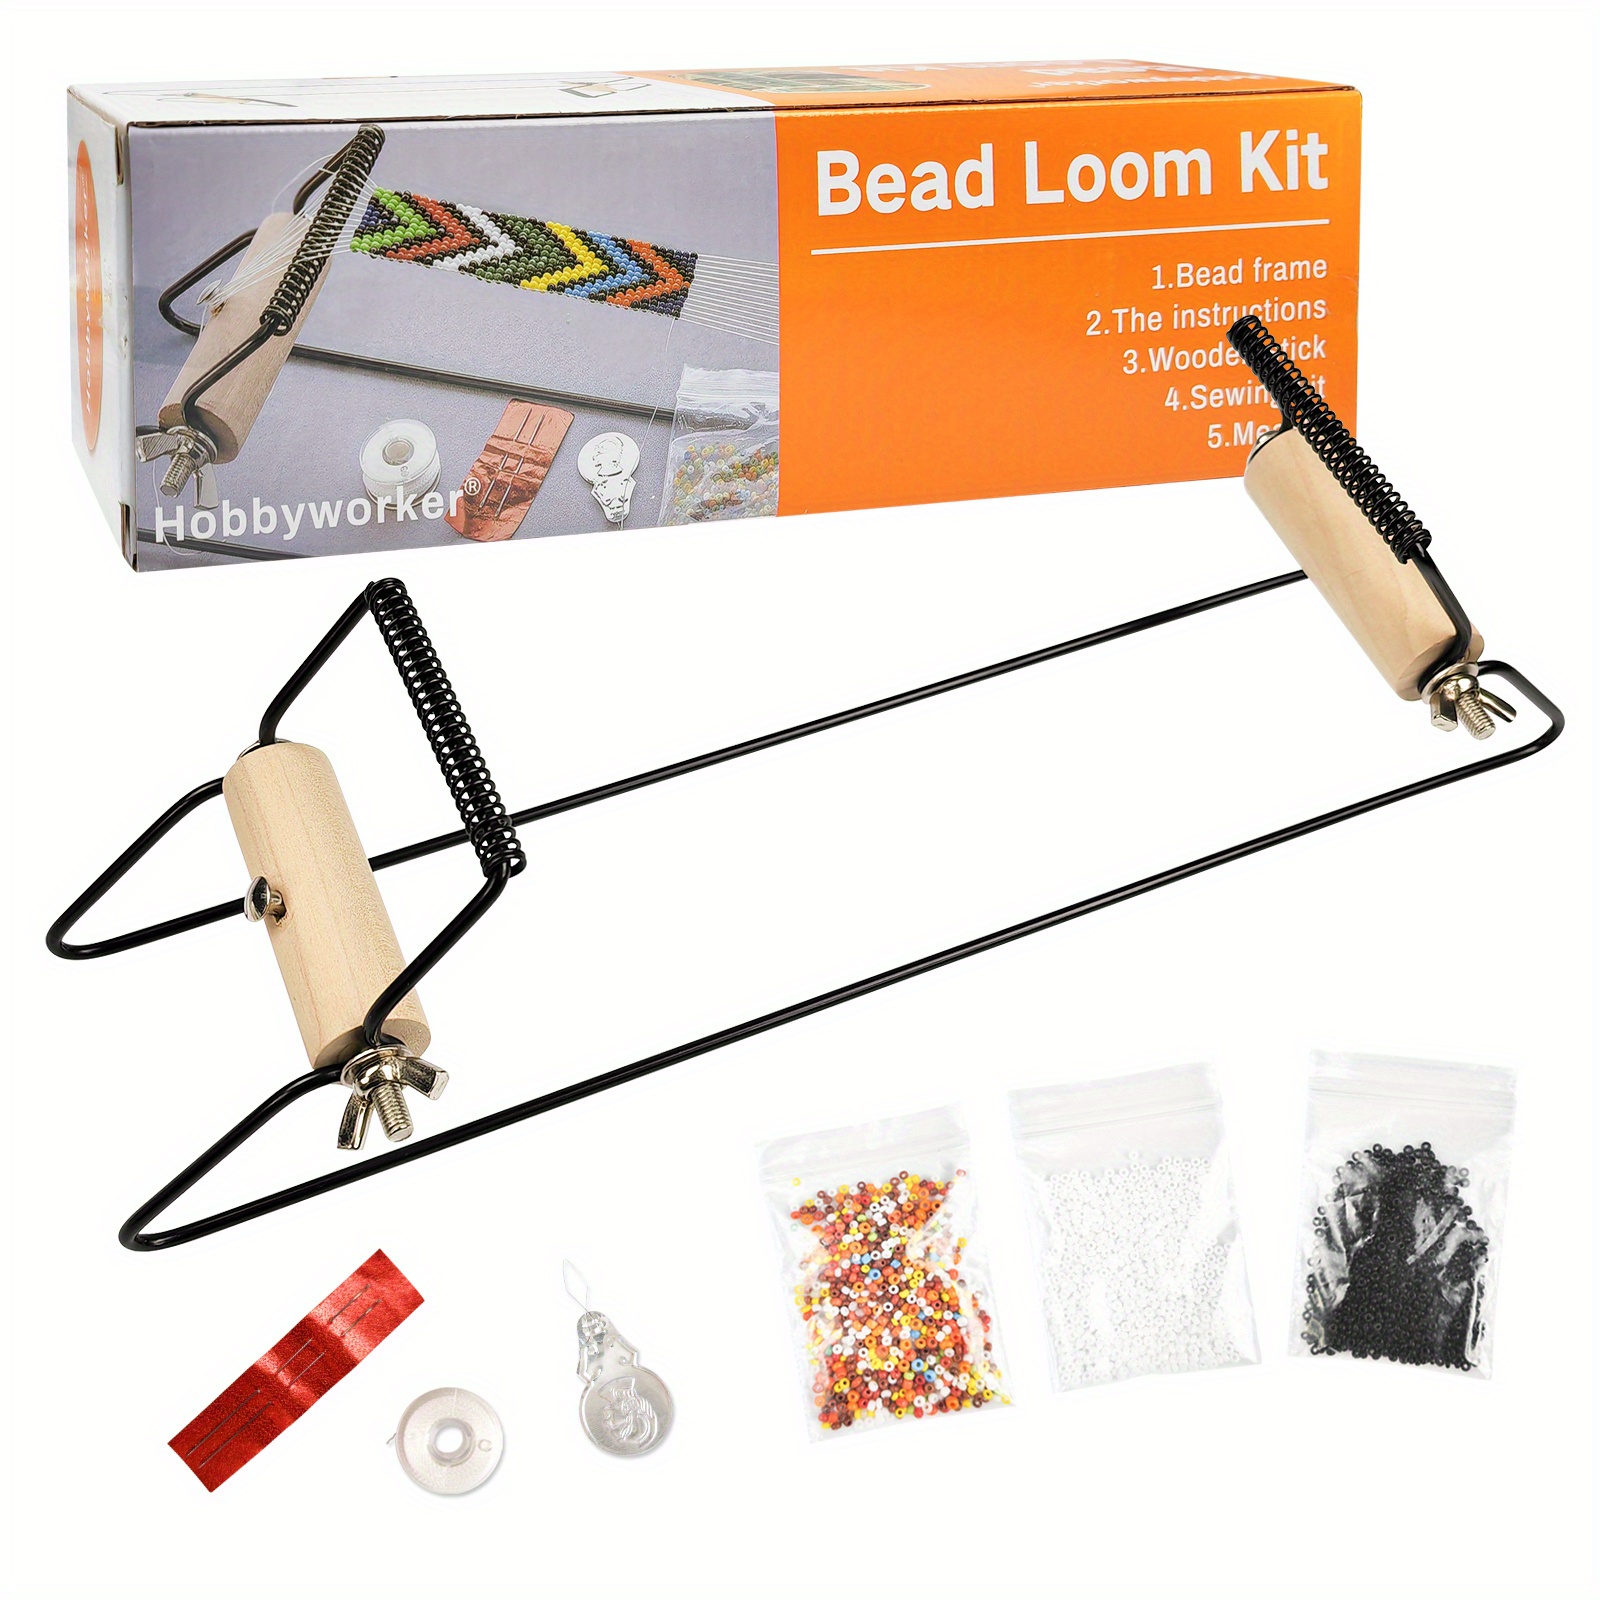 hobbyworker bead loom kit for making